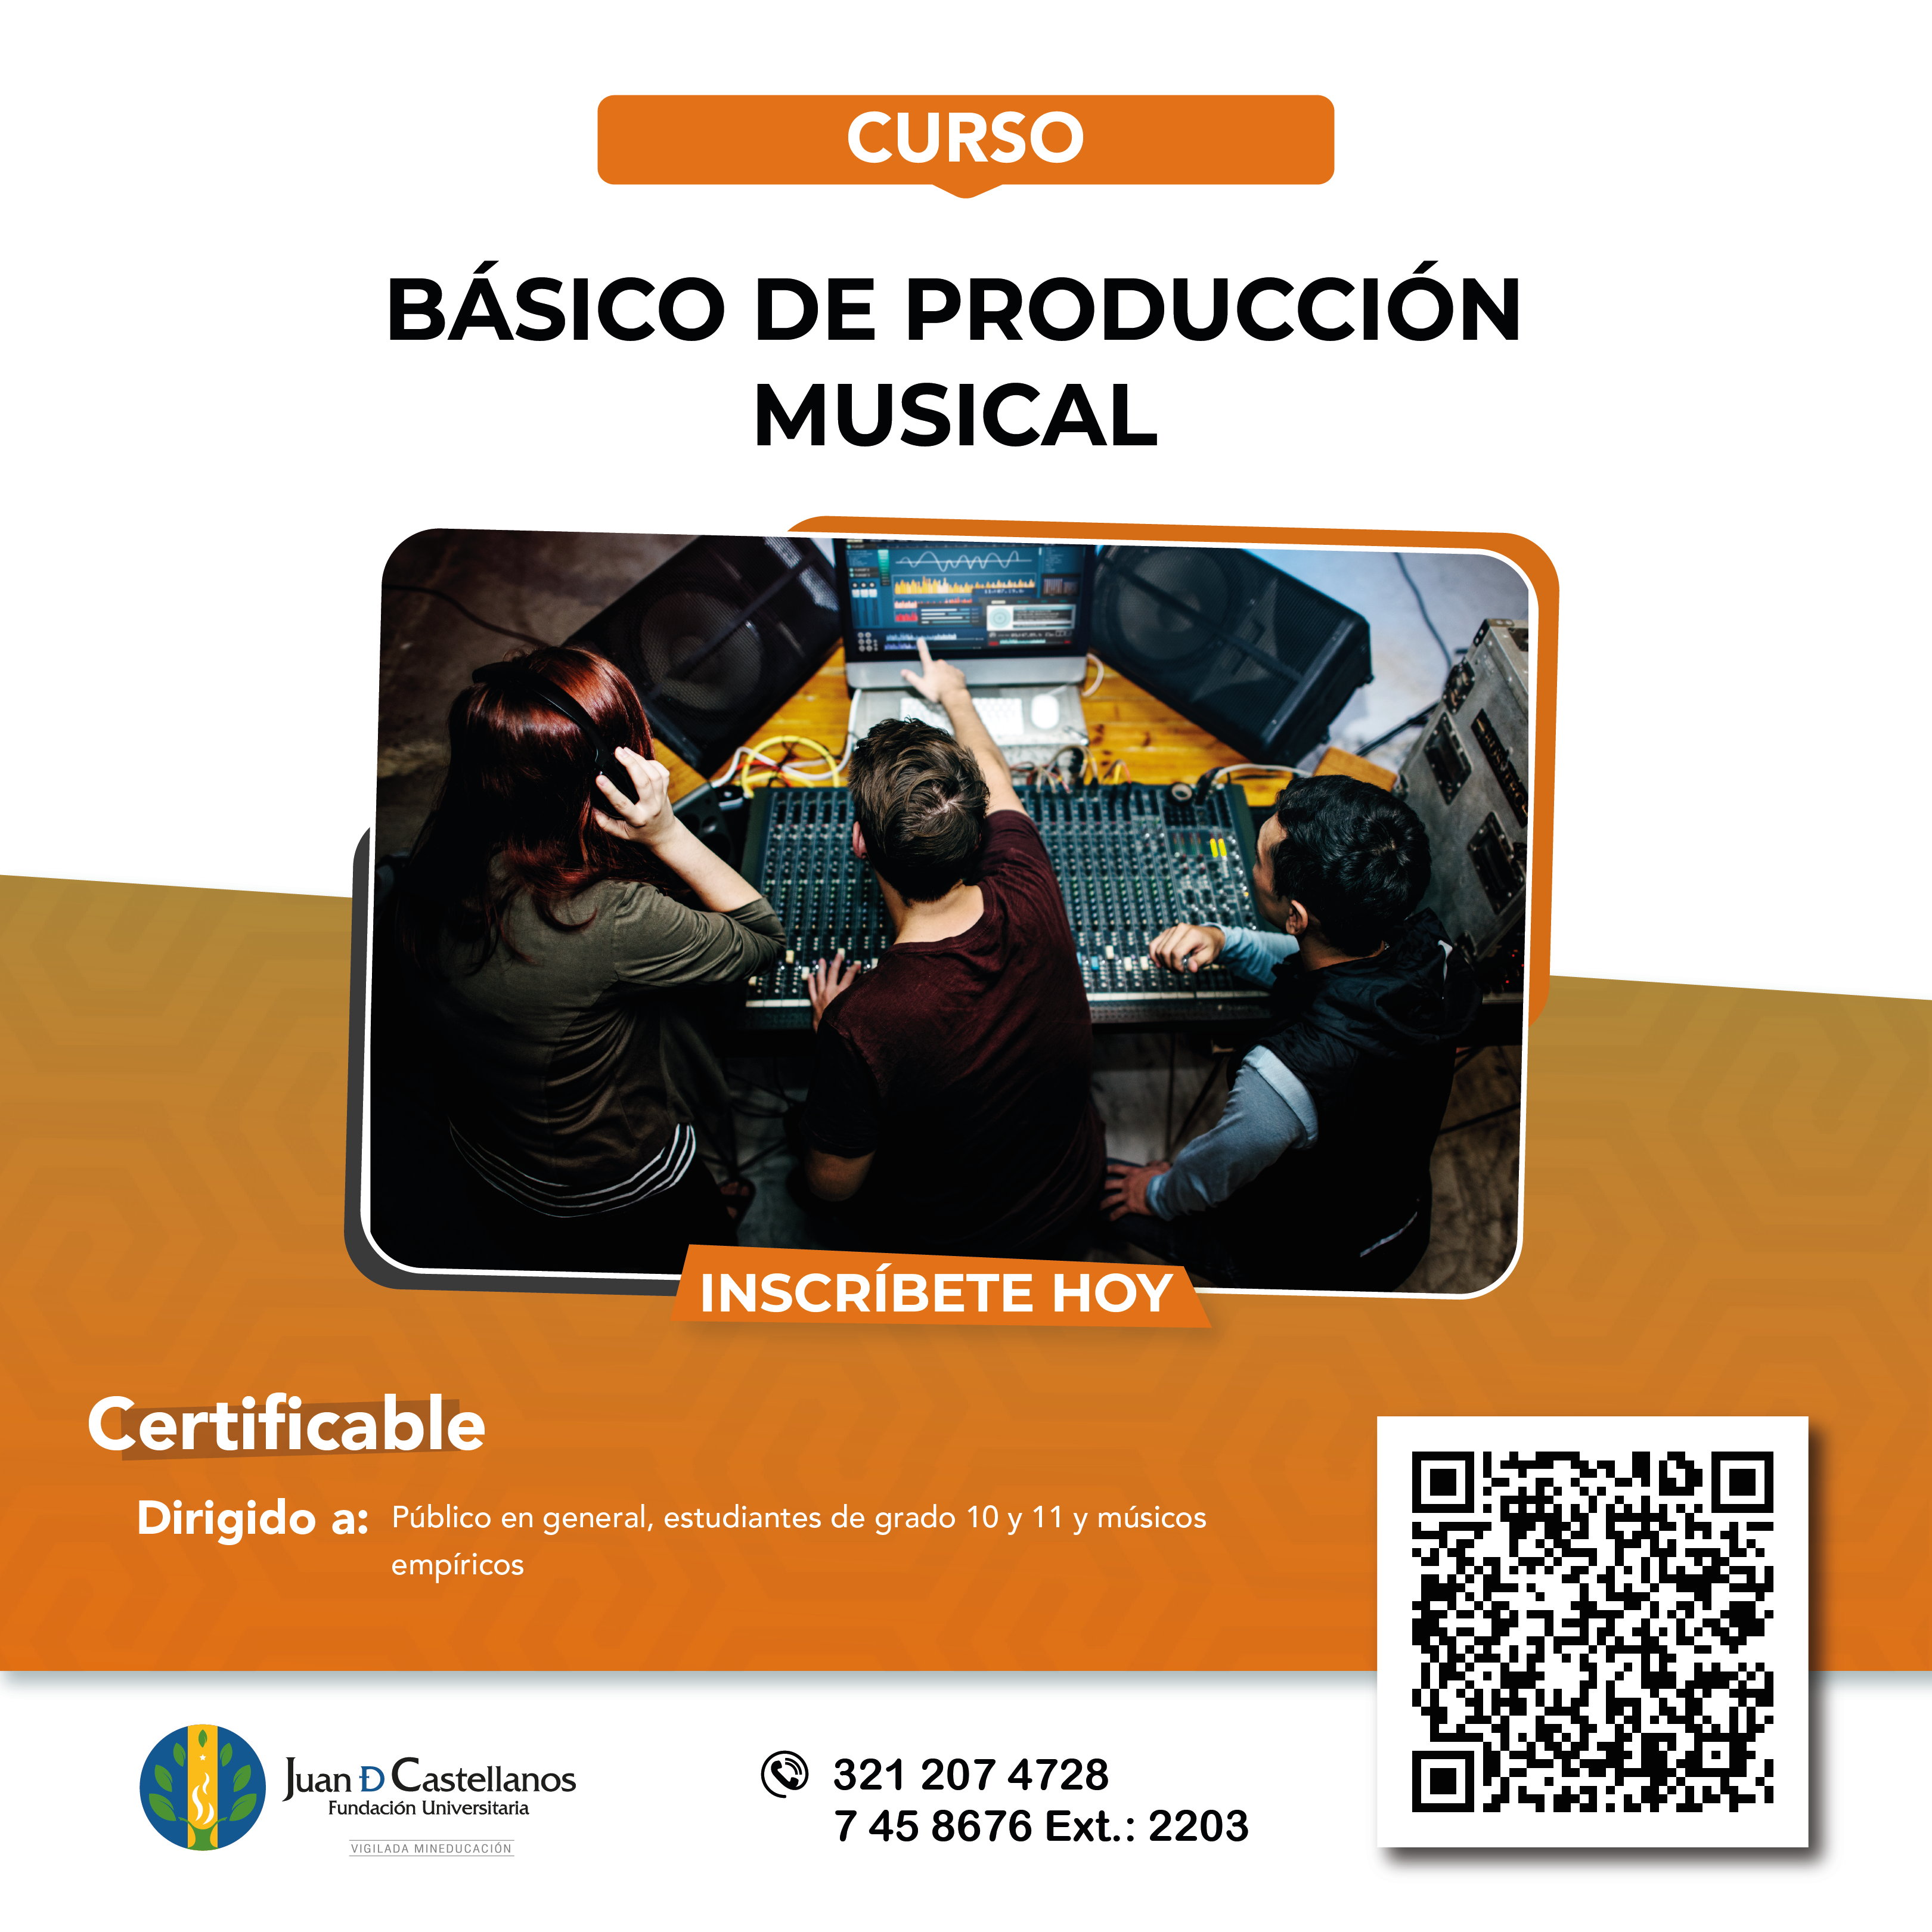 ¡Inscríbete al curso Básico de Producción Musical!